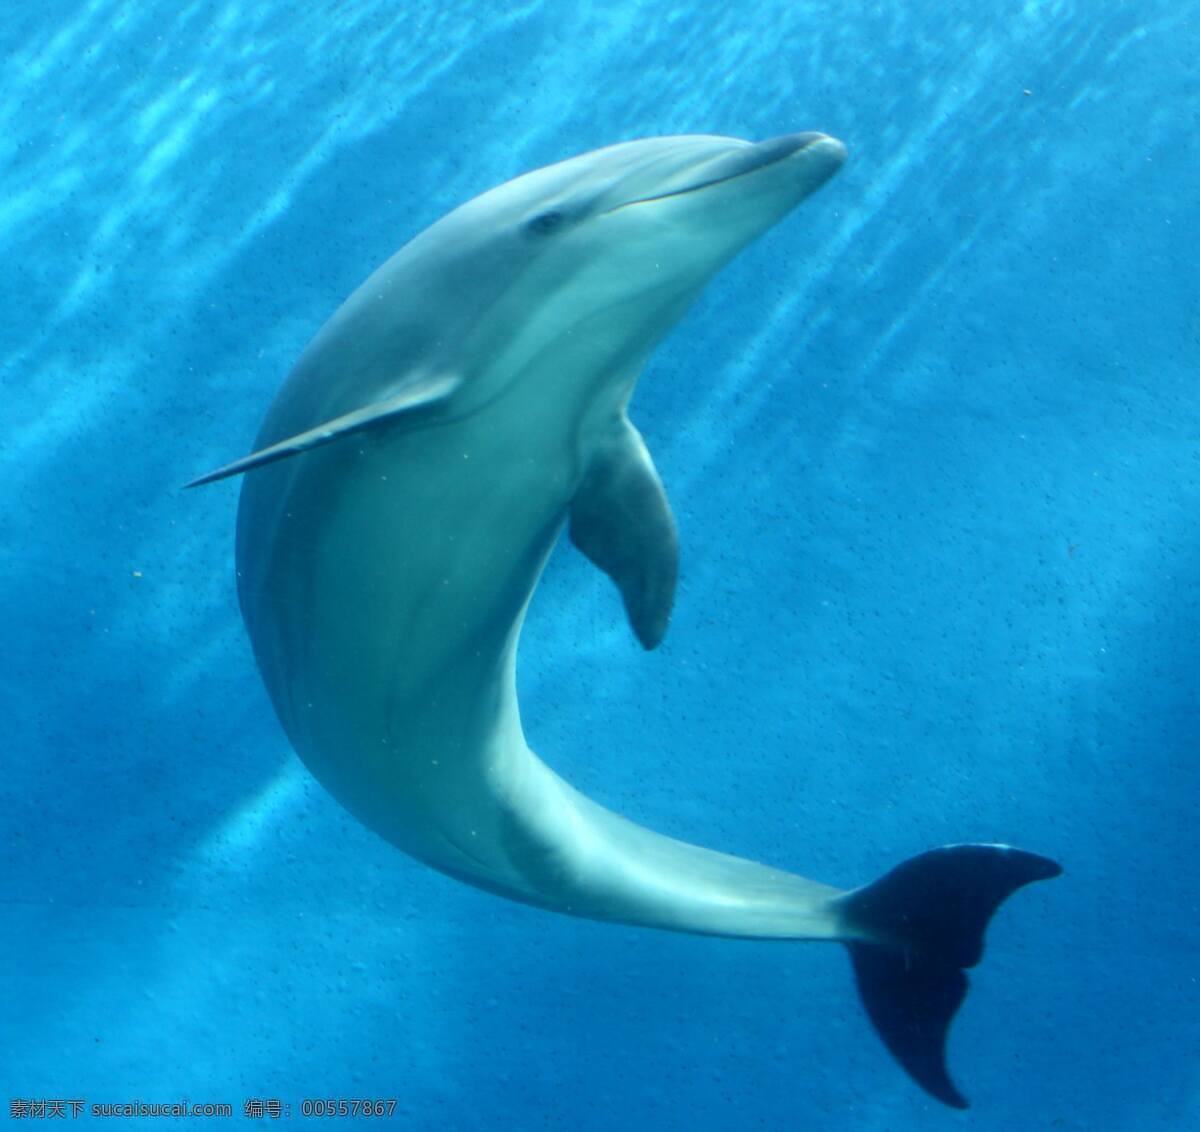 海豚 可爱 聪明 海洋生物 海豚摄影 海豚图片 海豚素材 海豚图集 生物世界 海豚飞跃 海豚跳跃 动物